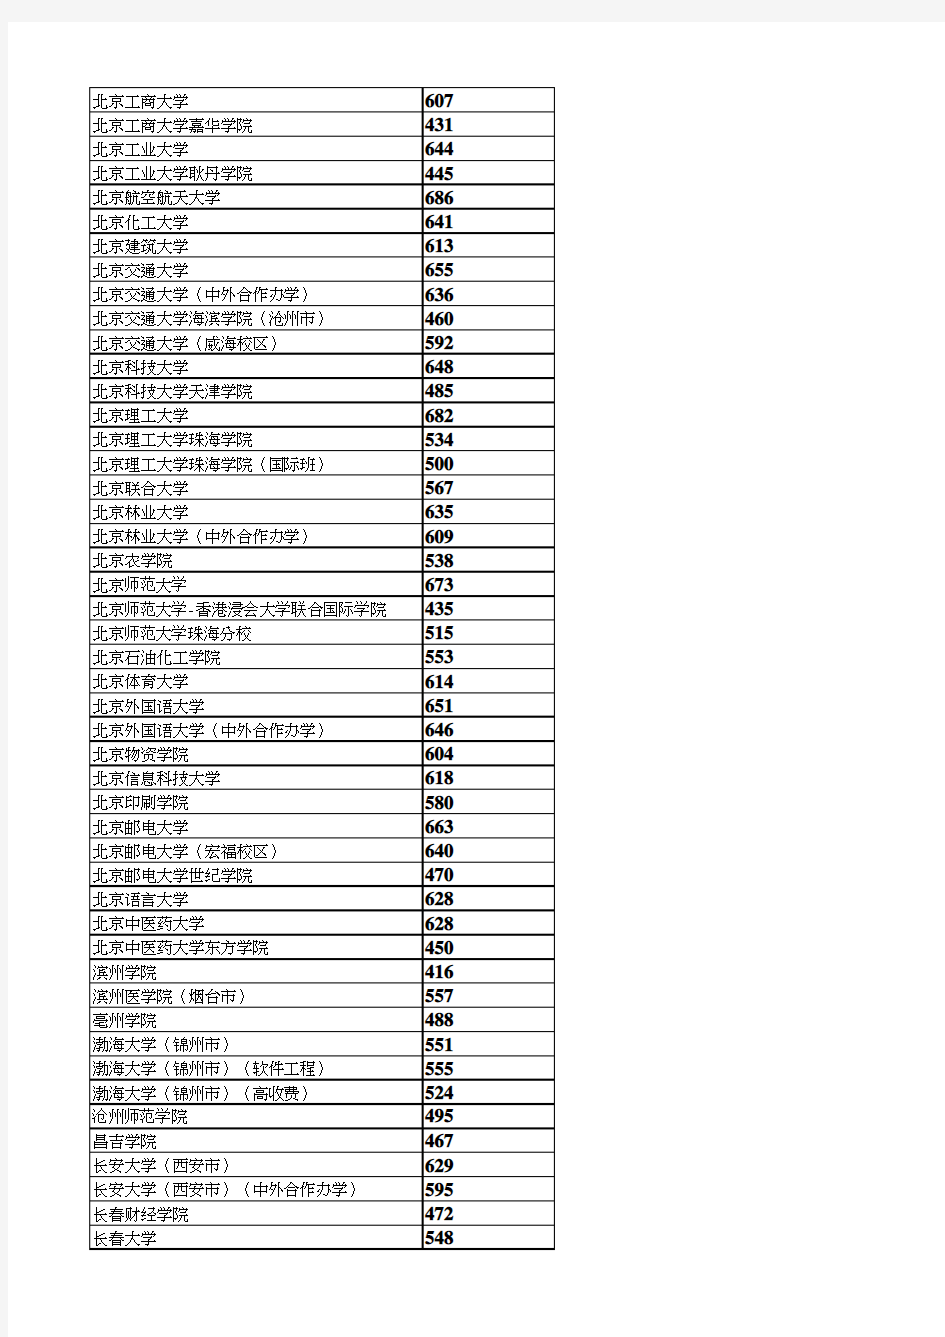 2020年河北省本科批理工一志愿平行投档最低分统计表